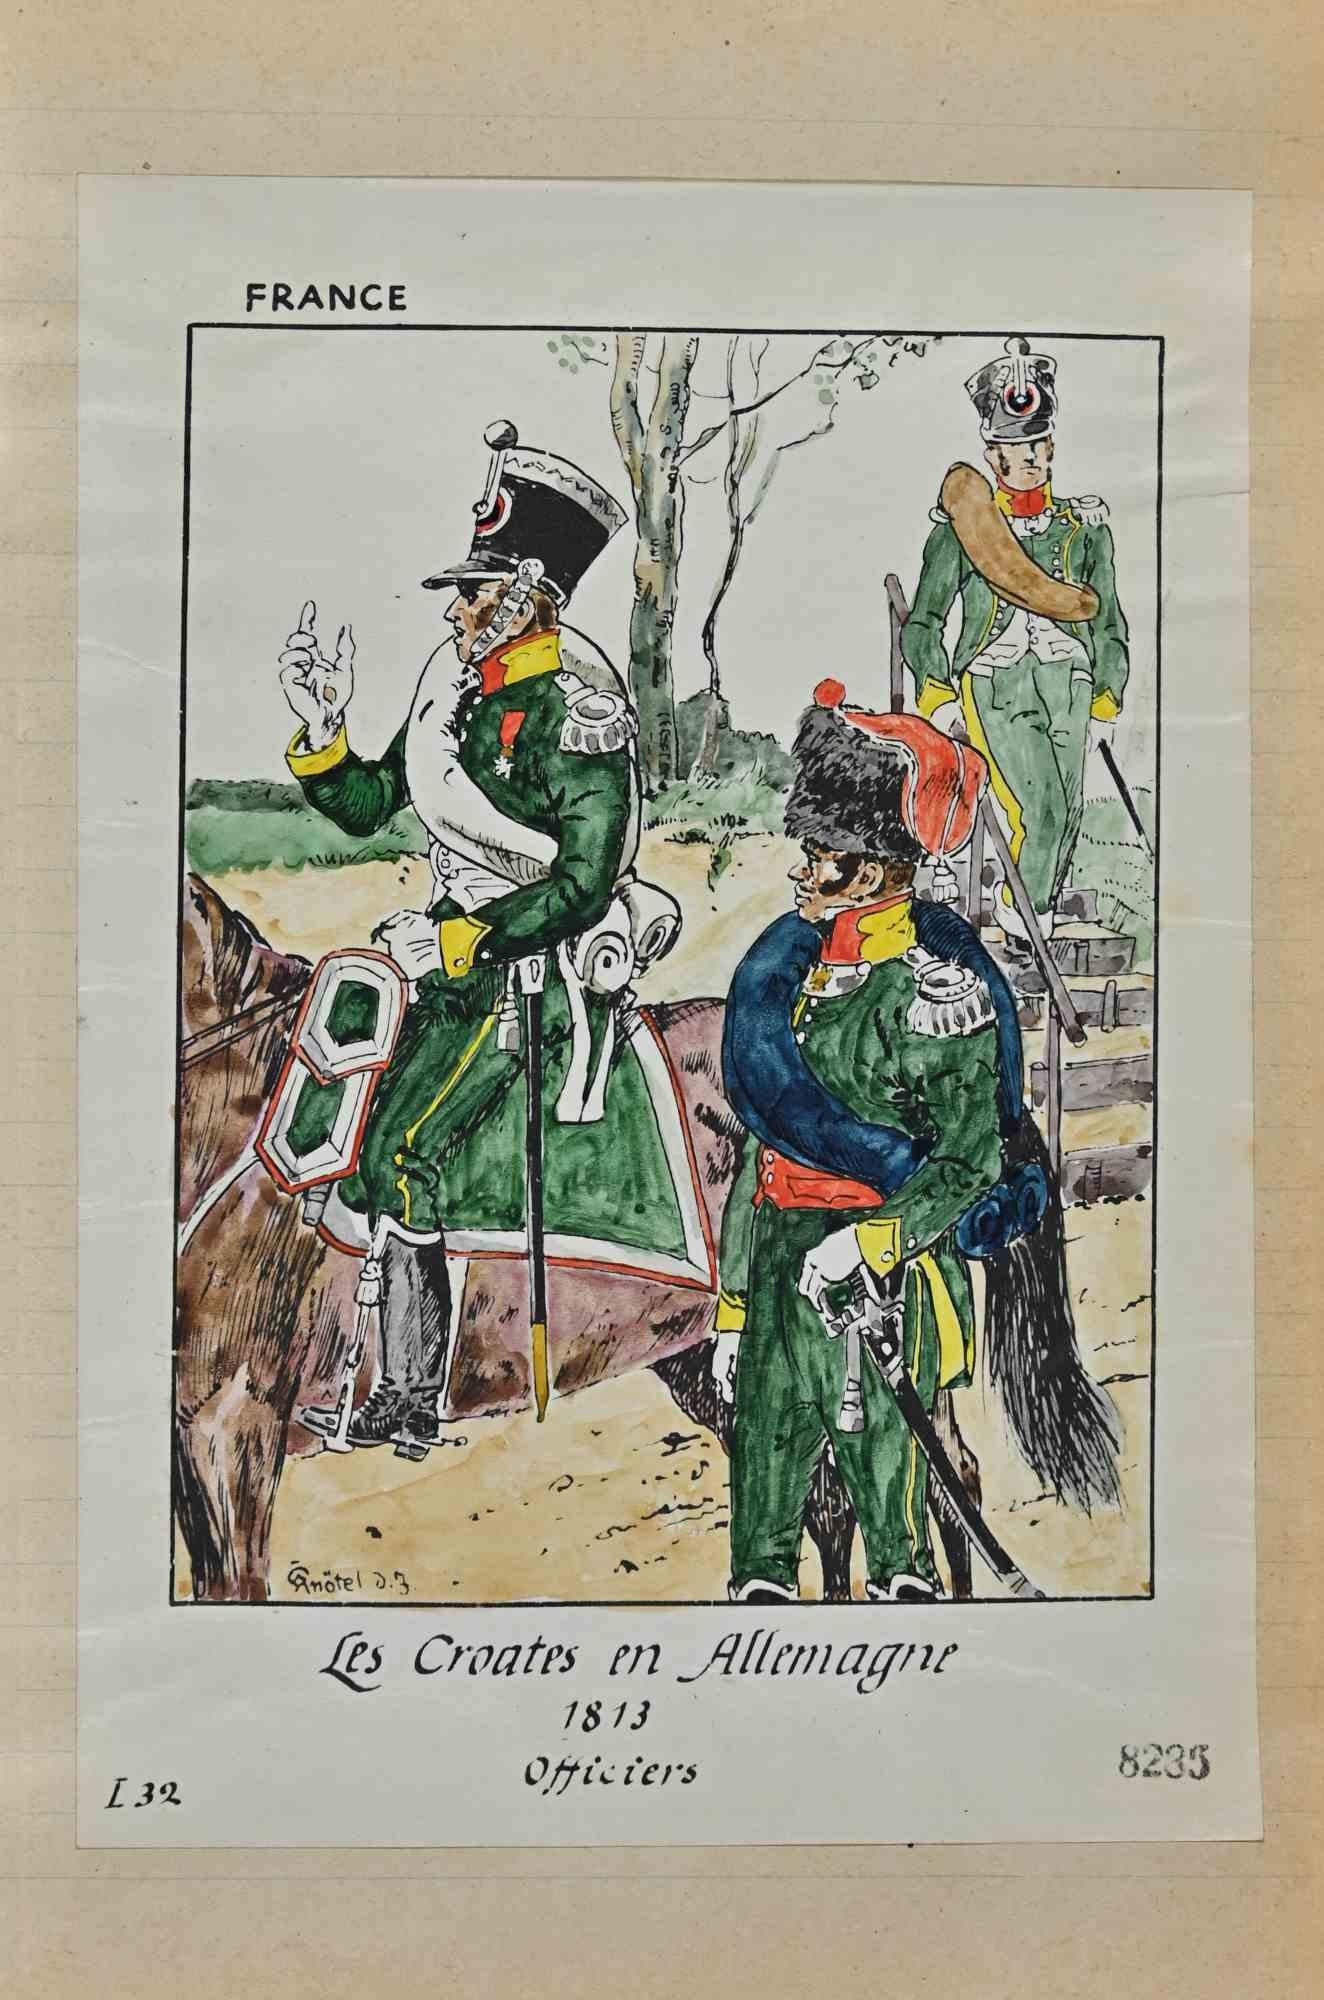 Le Croates en Allemagne (Armée française) - dessin original d'Herbert Knotel - années 1940